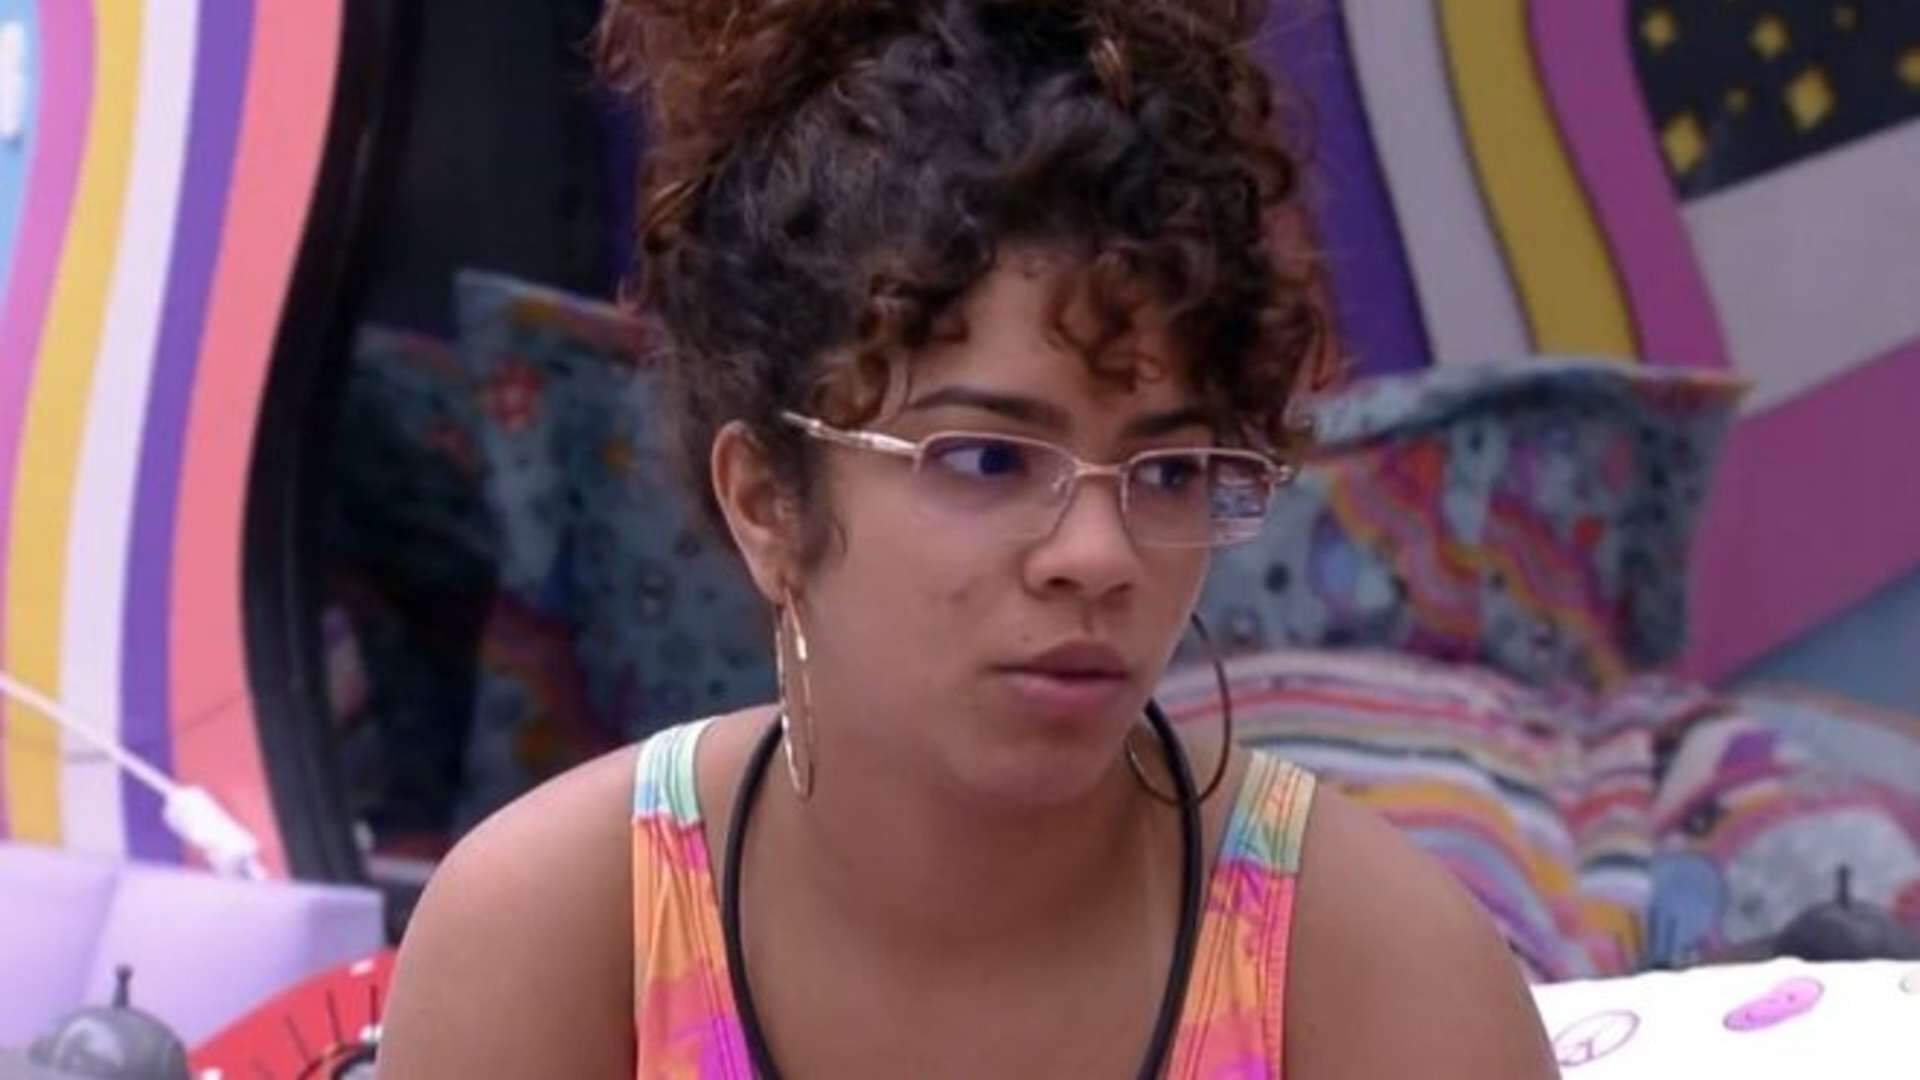 Expulsa do Big Brother Brasil, Maria desabafa sobre ano difícil: “Cogitei jogar tudo isso fora”